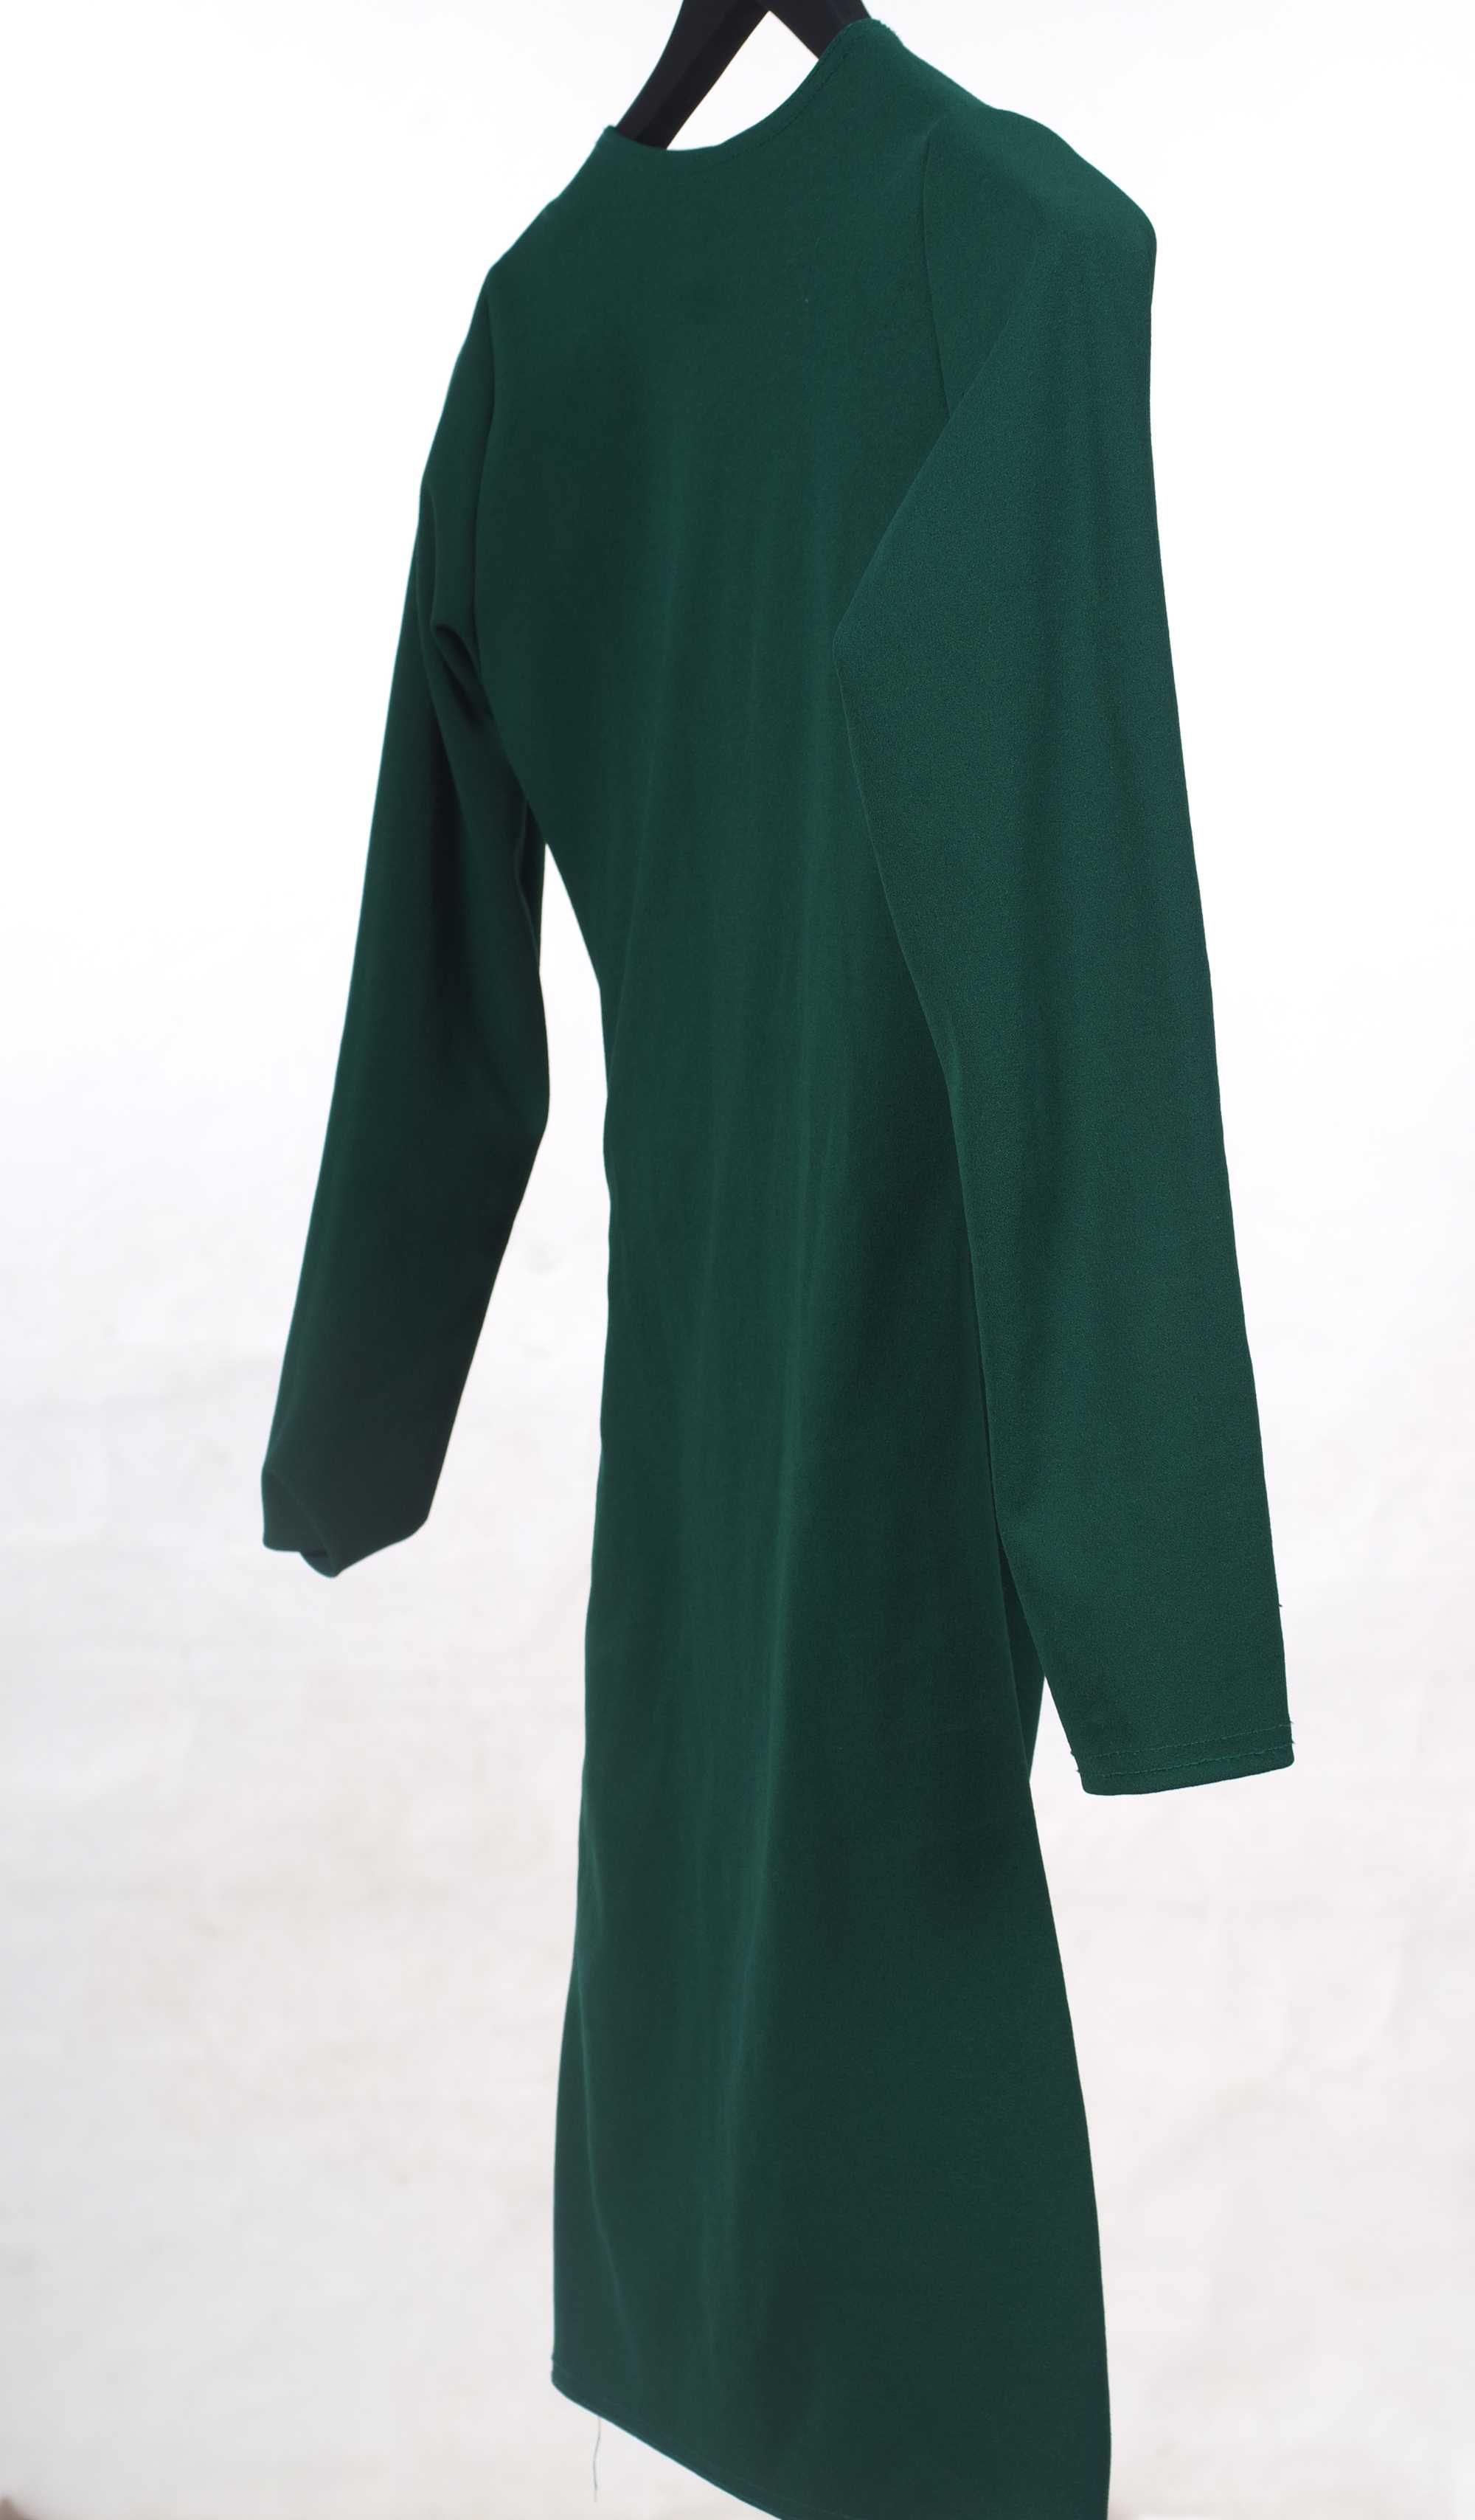 sukienka damska S 36 butelkowa zieleń, sukienka przekładana, Chenelle